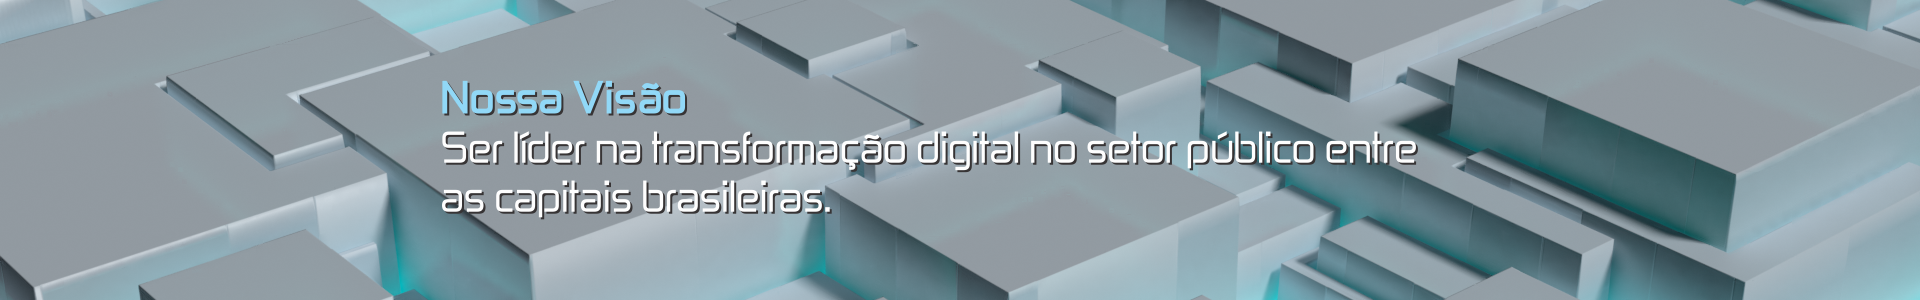 Nossa Visão - Ser líder na transformação digital no setor público entre as capitais brasileiras.